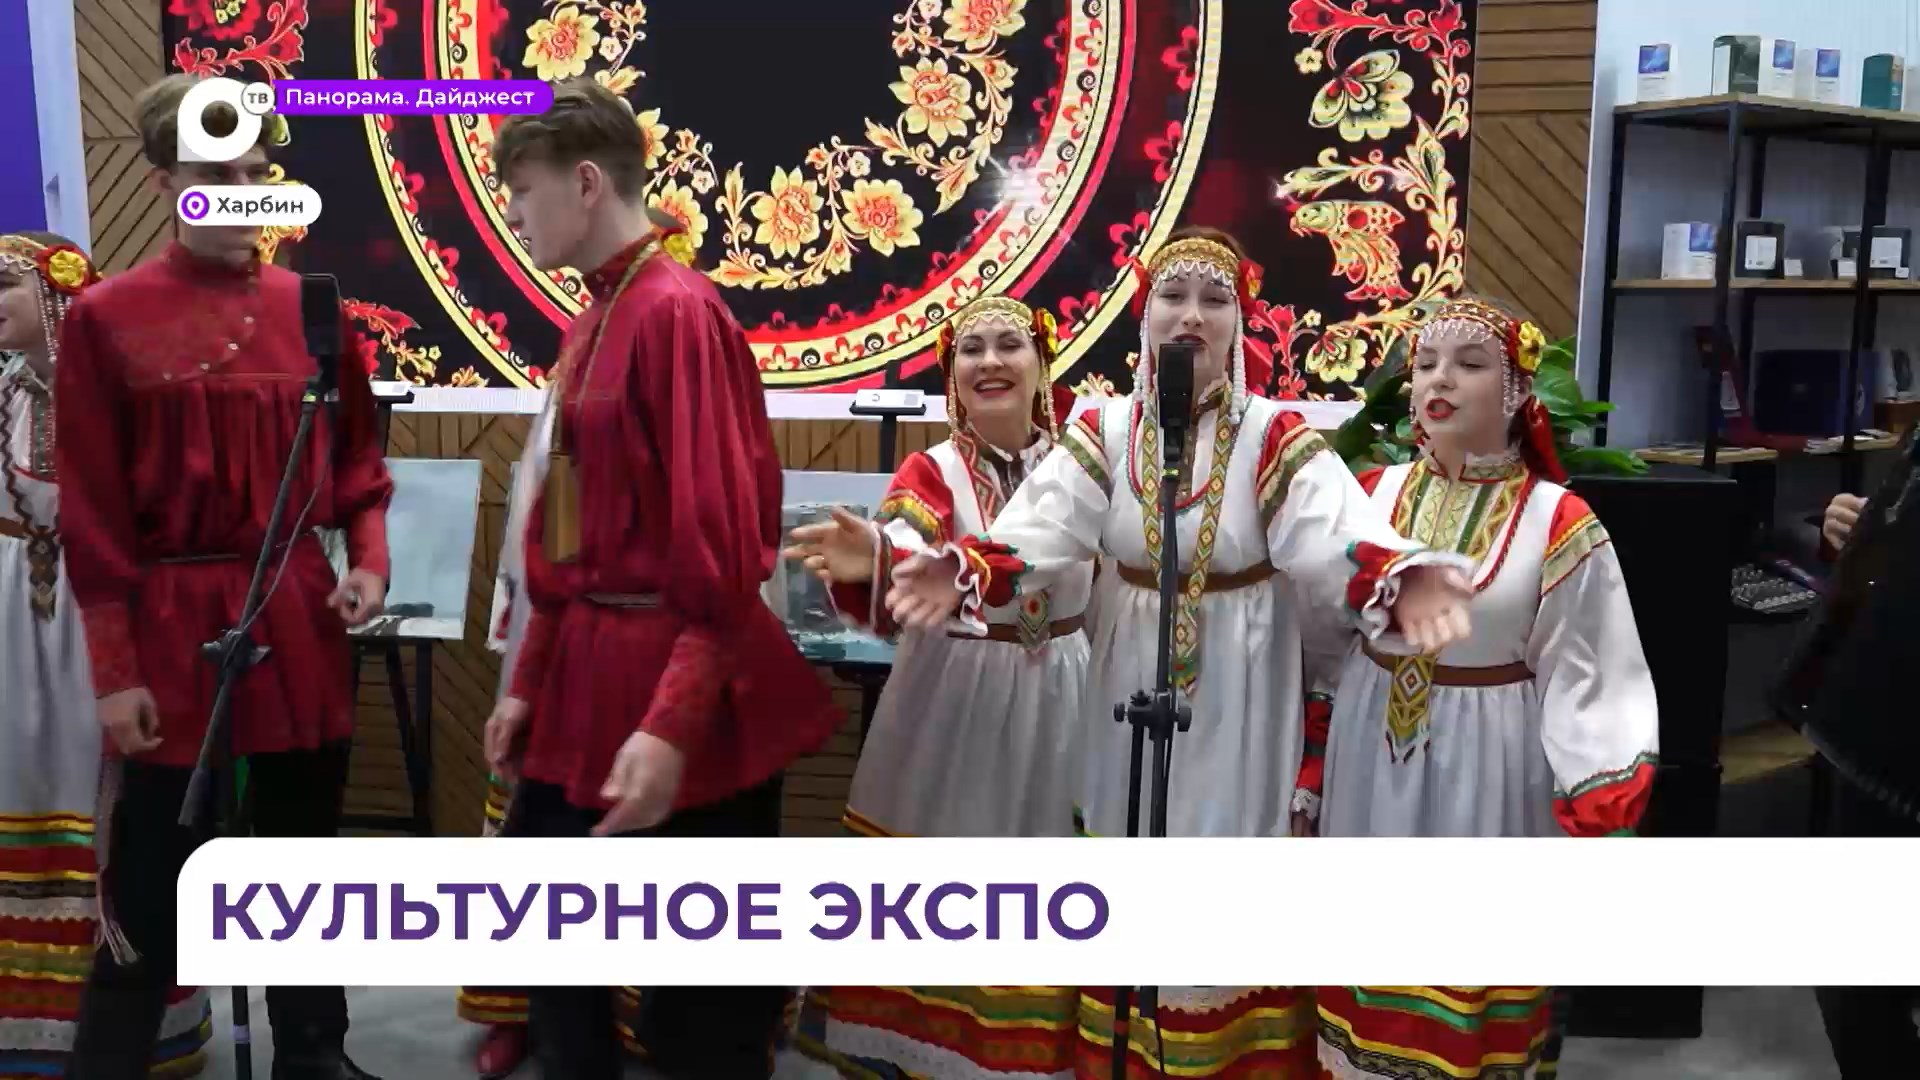 Артисты Приморской филармонии обрели тысячи поклонников в Харбине